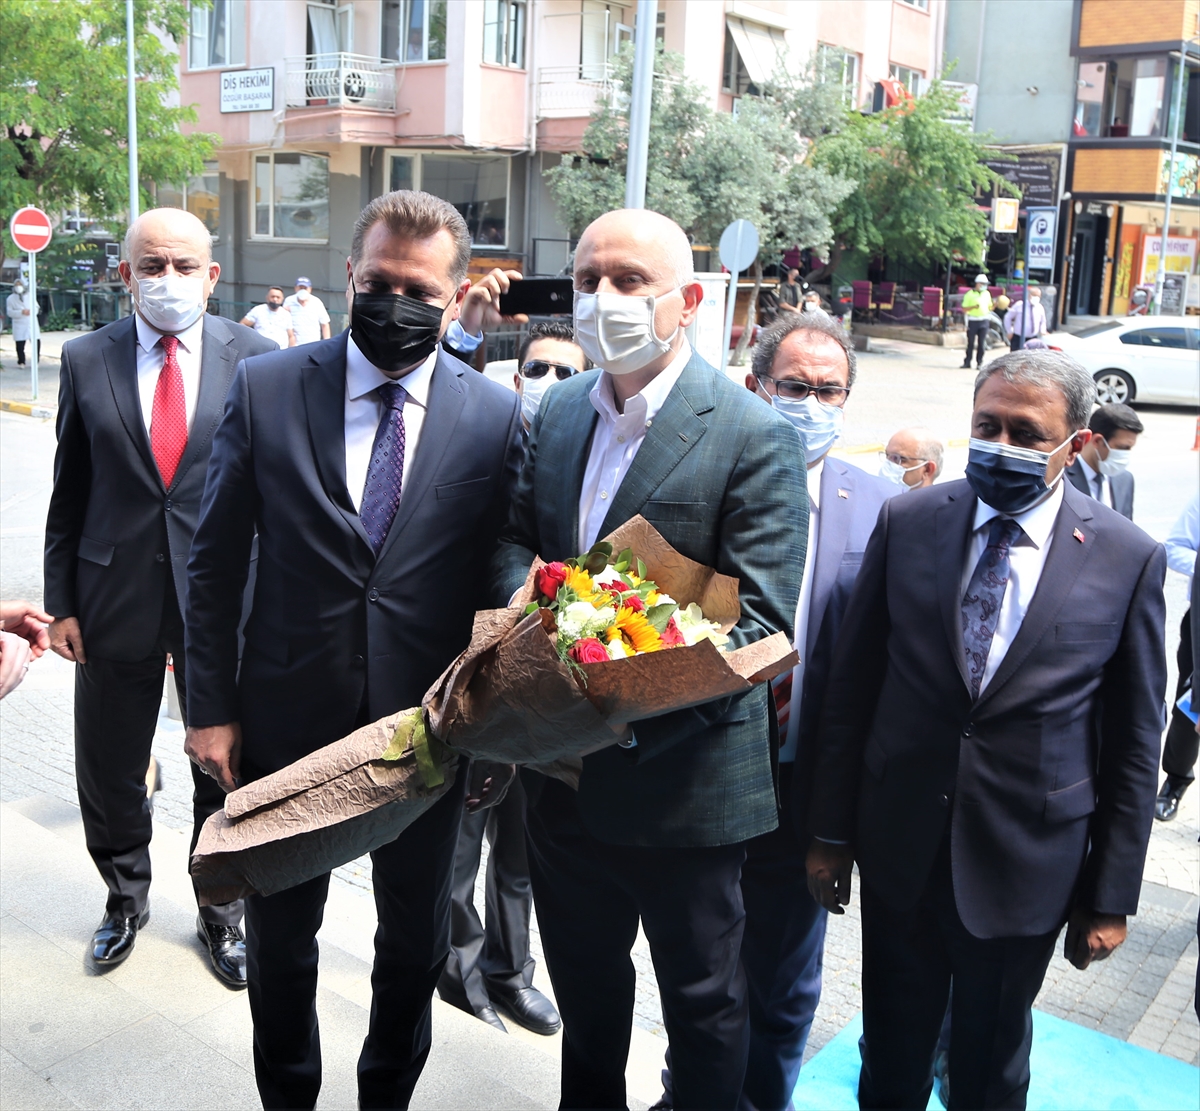 Ulaştırma ve Altyapı Bakanı Karaismailoğlu, Balıkesir-Savaştepe Yolu şantiyesinde incelemelerde bulundu: